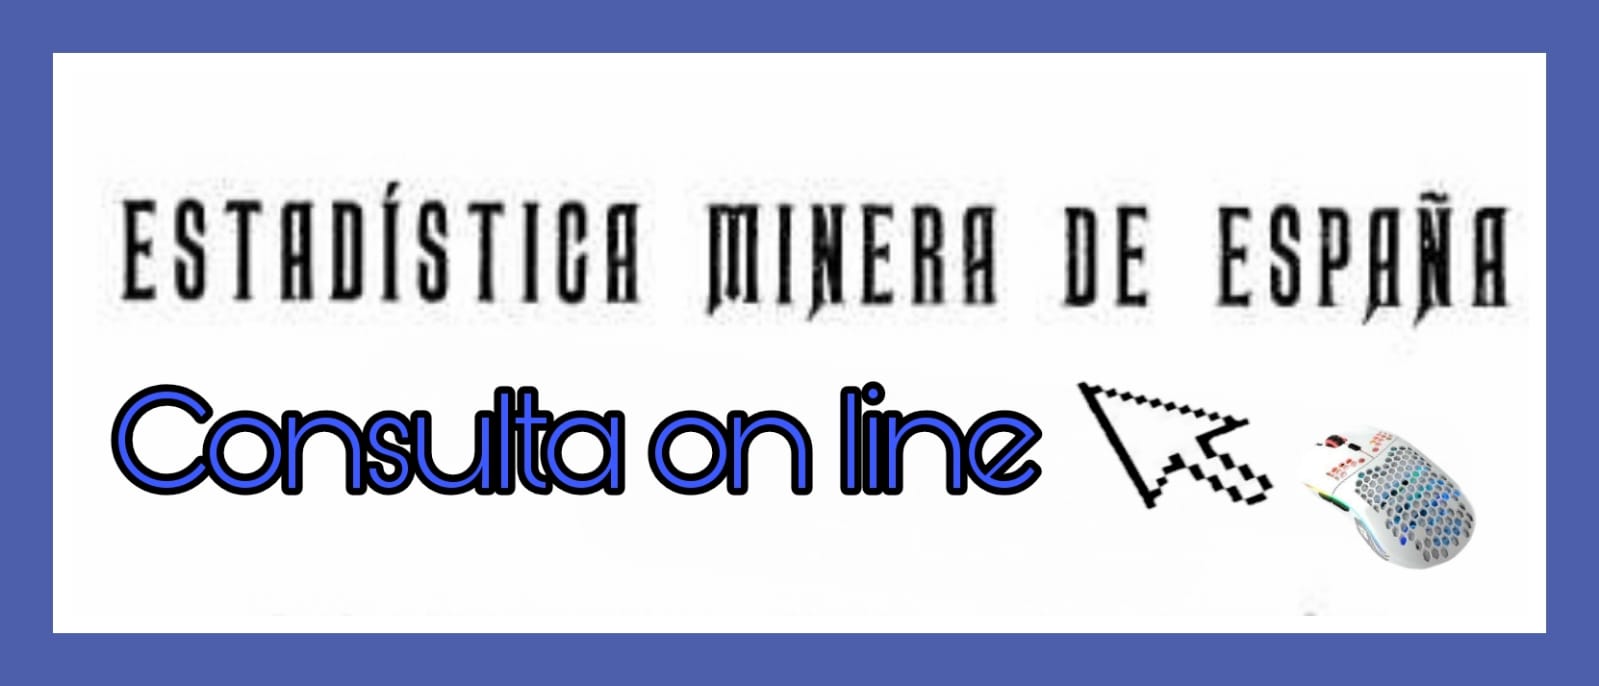 Estadística Minera de España, consulta on line